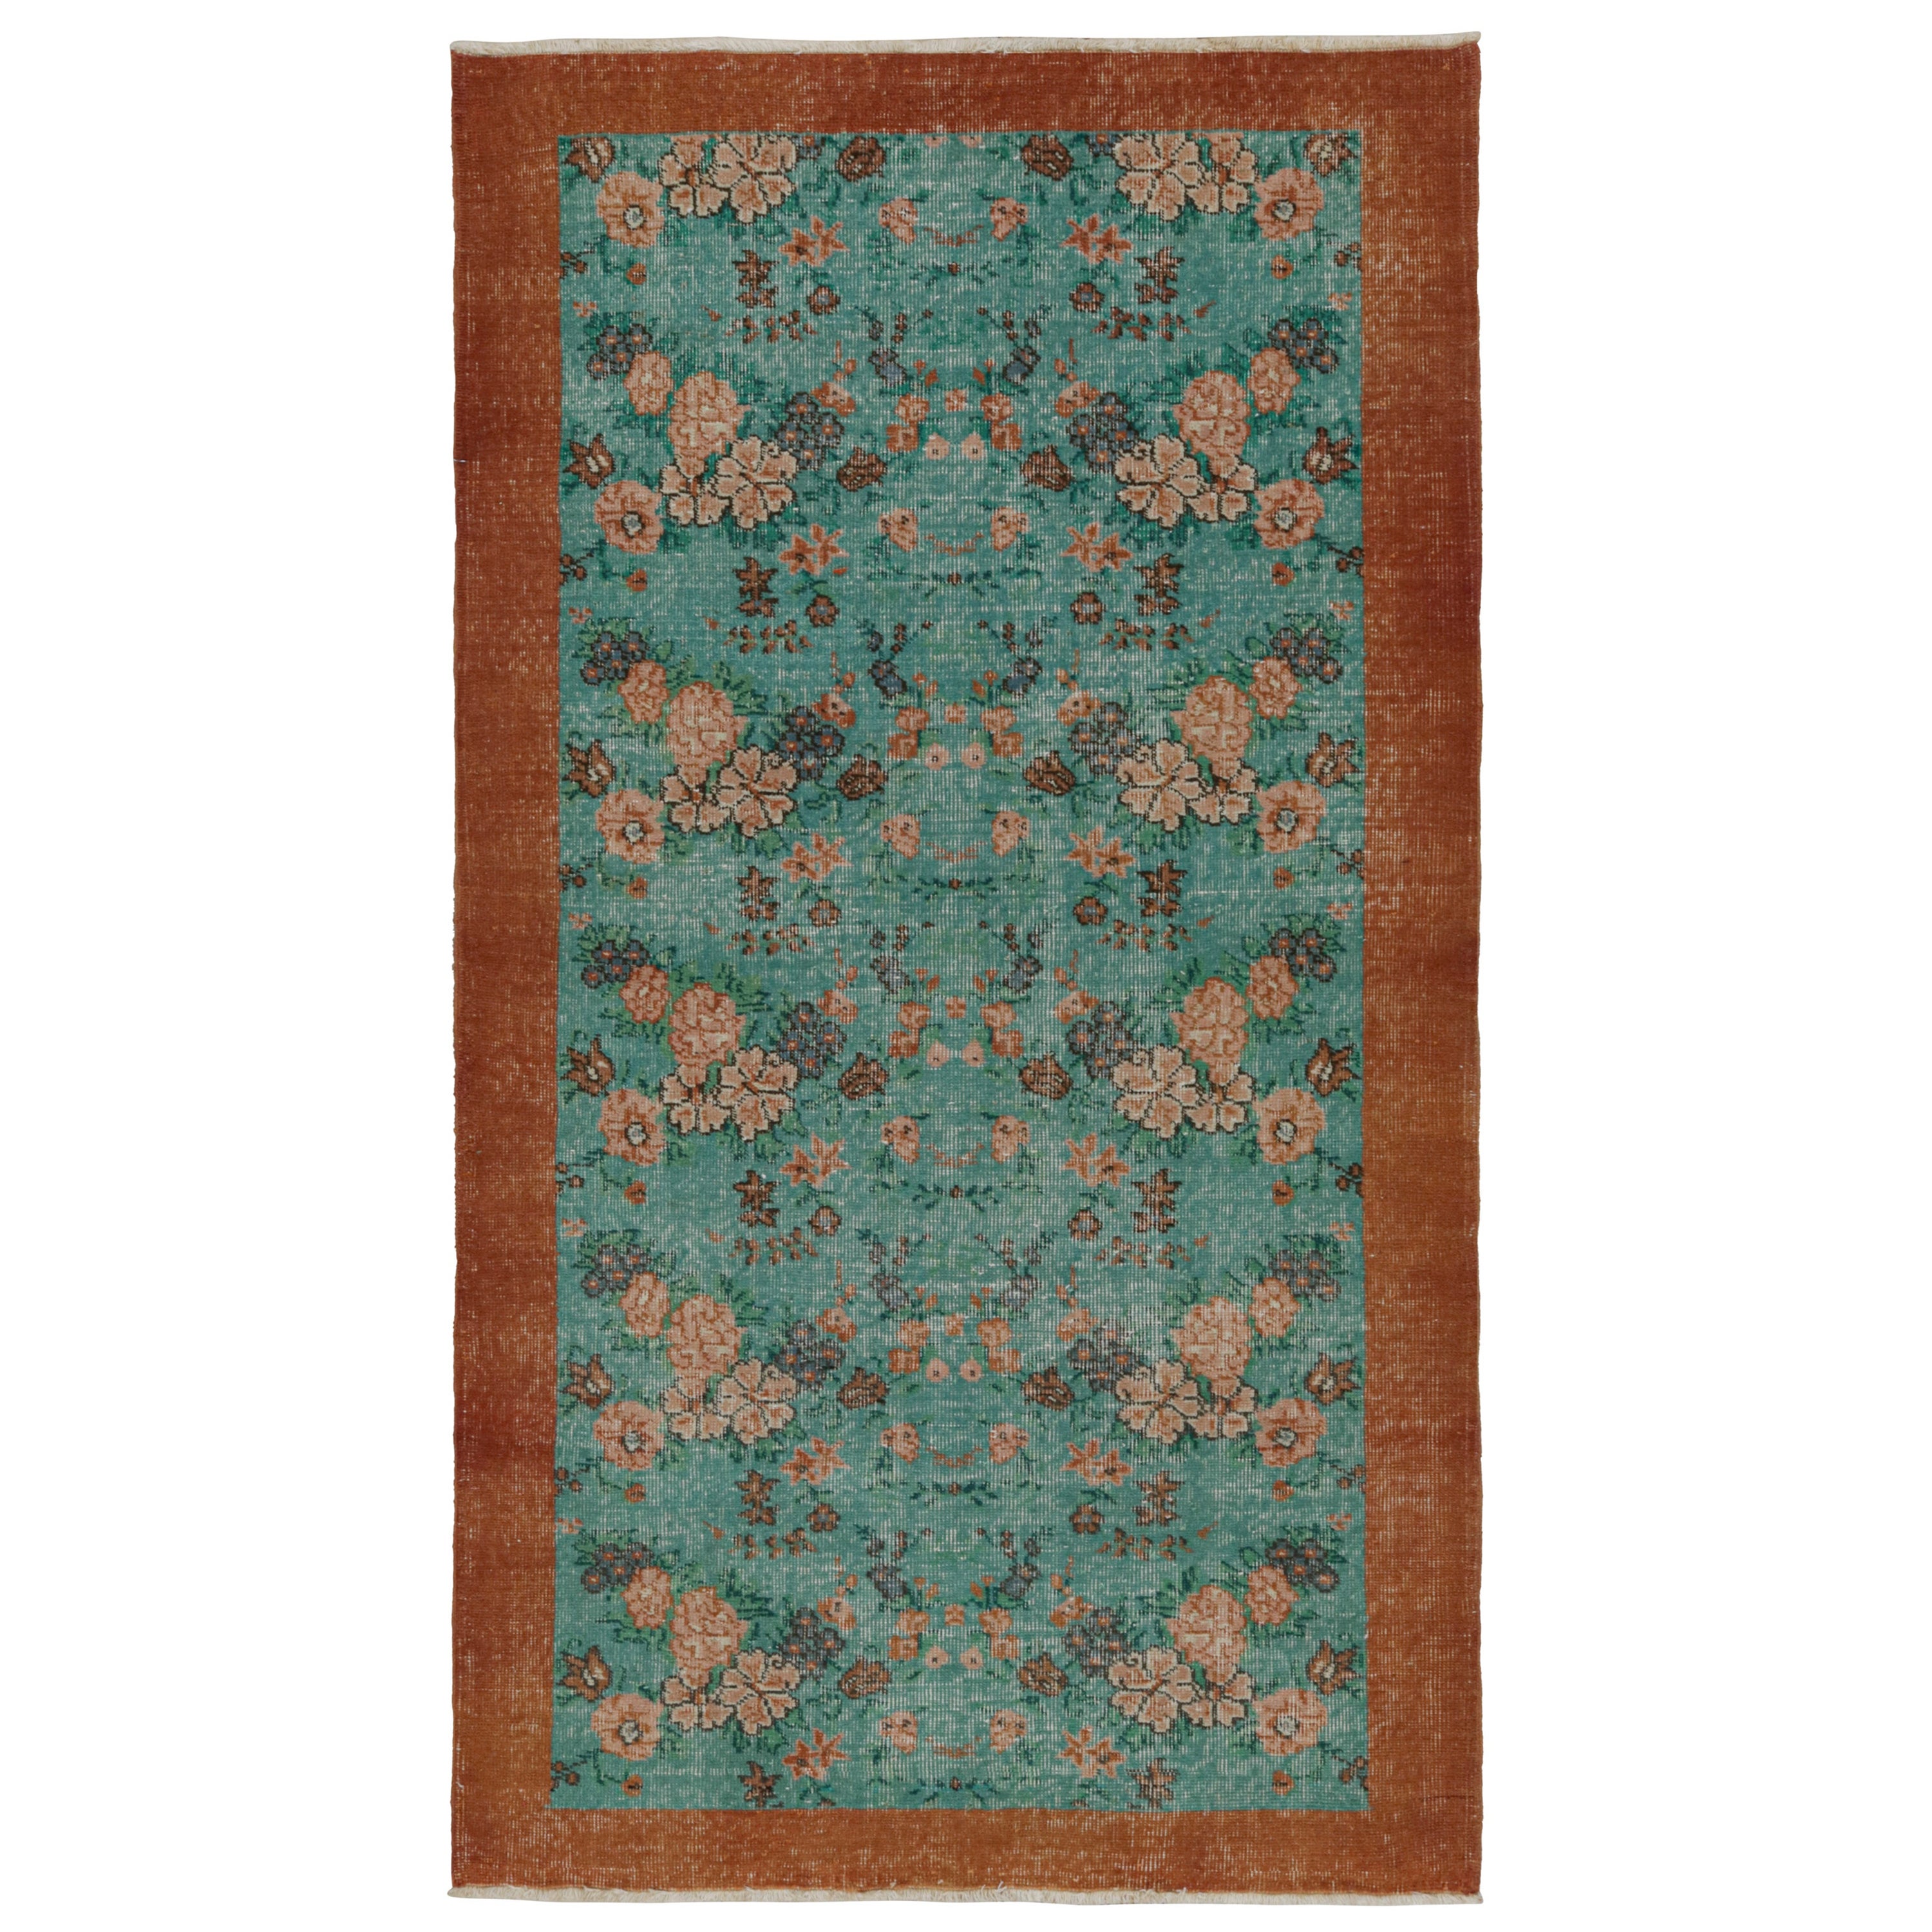 Vintage Zeki Muren rug in Teal, with floral patterns, from Rug & Kilim For Sale